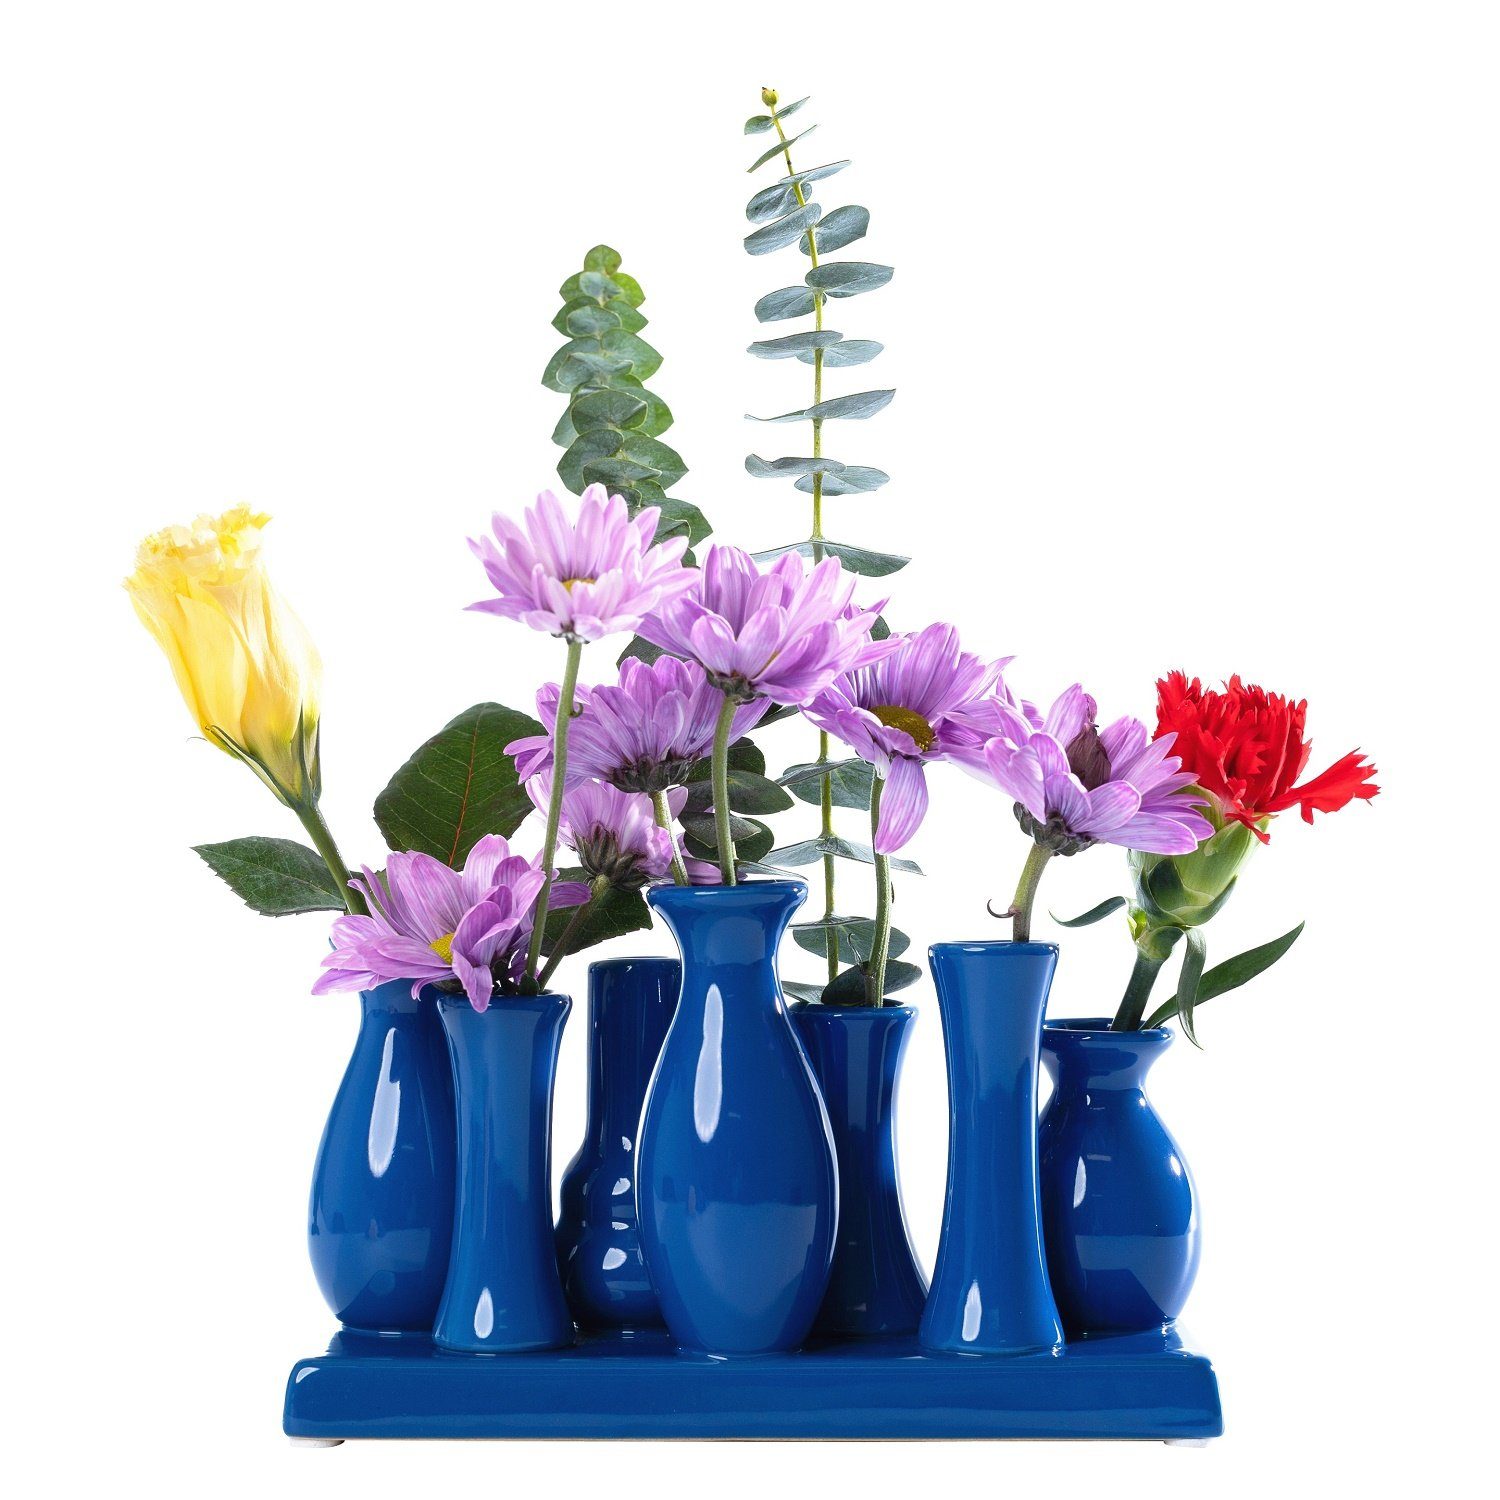 Jinfa Dekovase Handgefertigte kleine Keramik Deko Blumenvasen (7 Vasen Set blau), verbunden auf auf einem Tablett